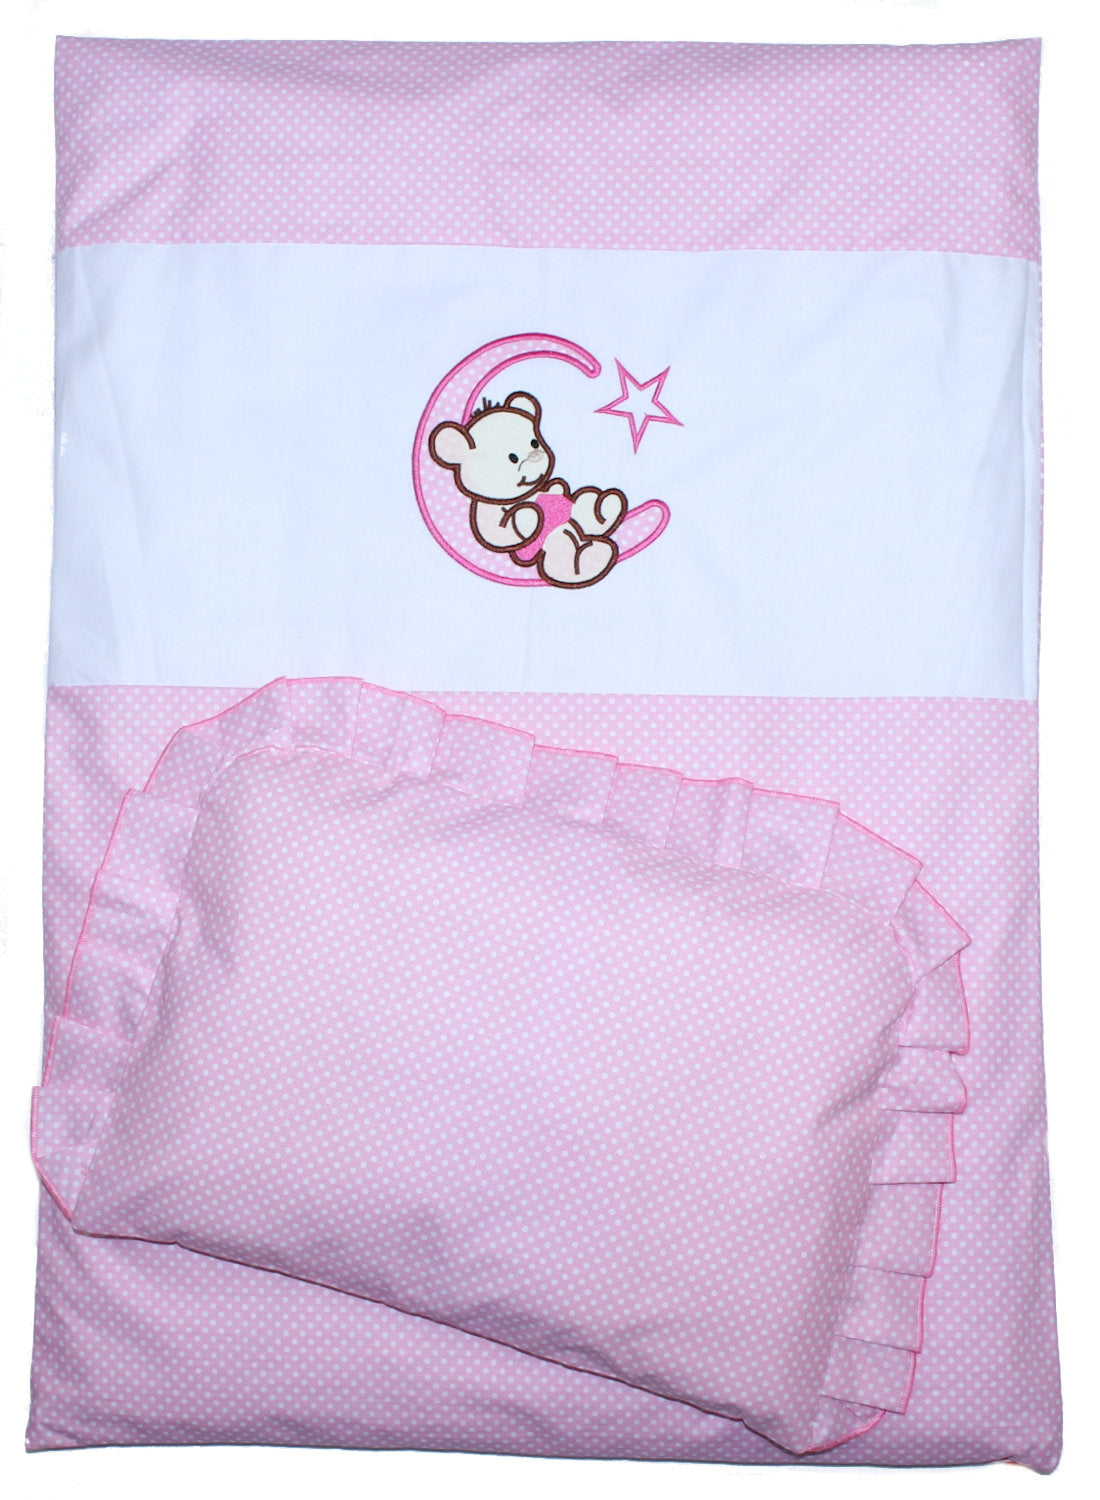 2- 4tlg Kinderwagenset - Bärchen Mond - Punkten Rosa - Bettwäsche für Kinderwagen Bezüge Decke Kissen